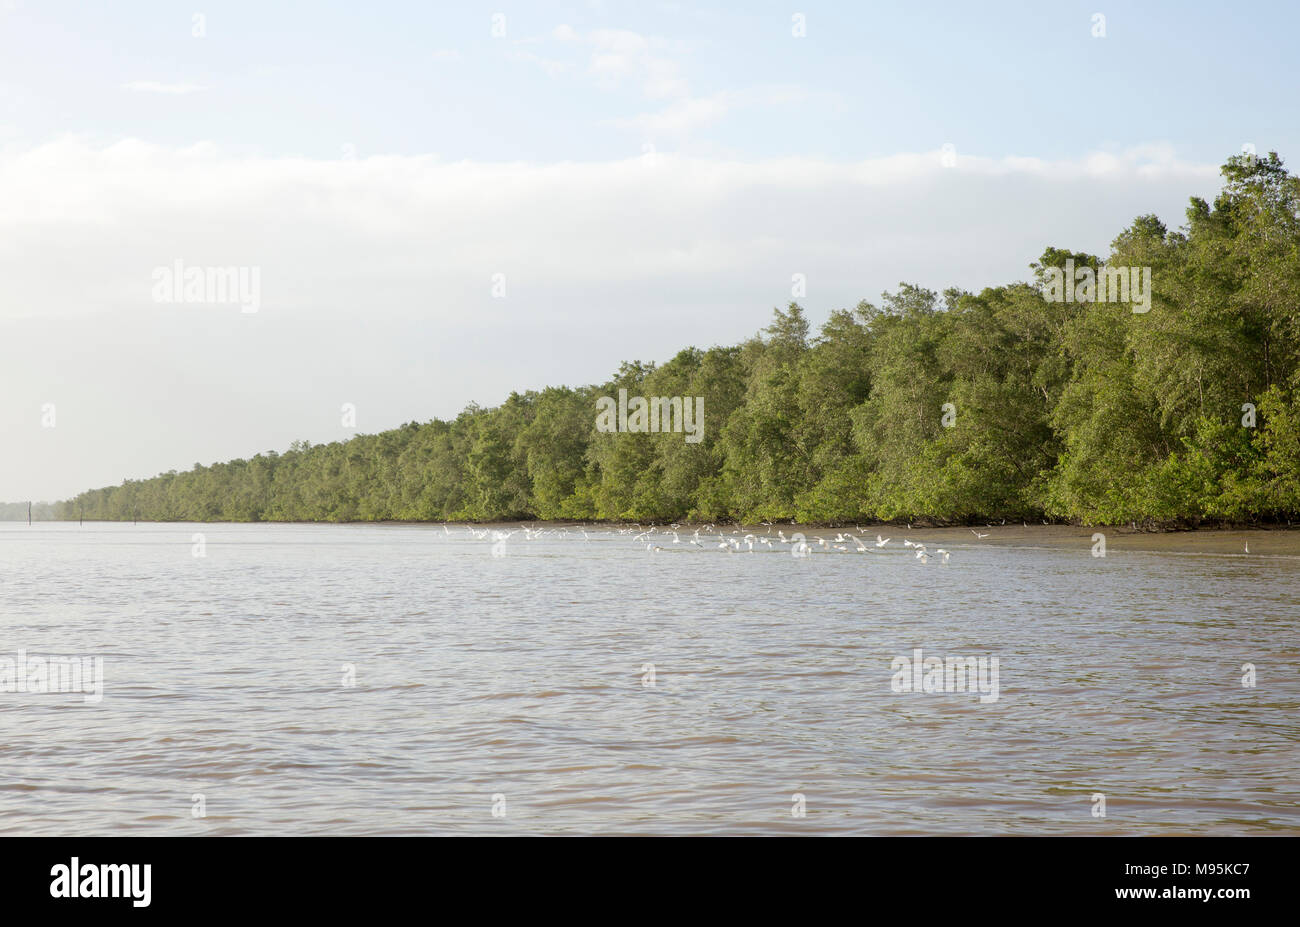 Forro de los manglares de las orillas del río Surinam, cerca de la capital de Surinam, Paramaribo. Suriname tiene extensos manglares. Foto de stock